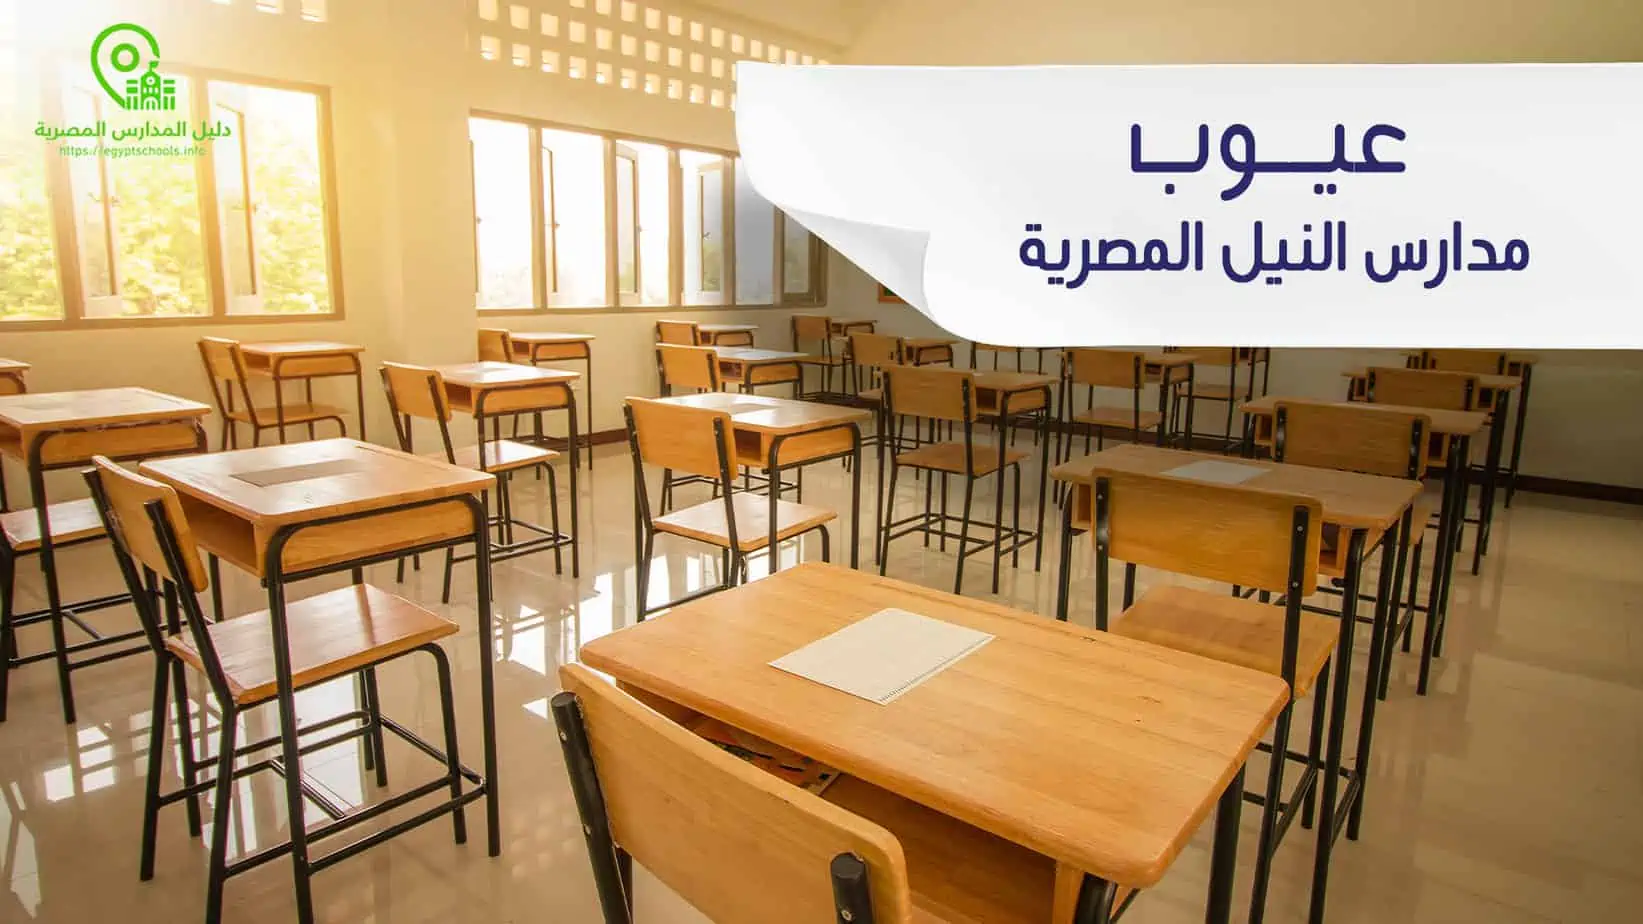 عيوب مدارس النيل المصرية